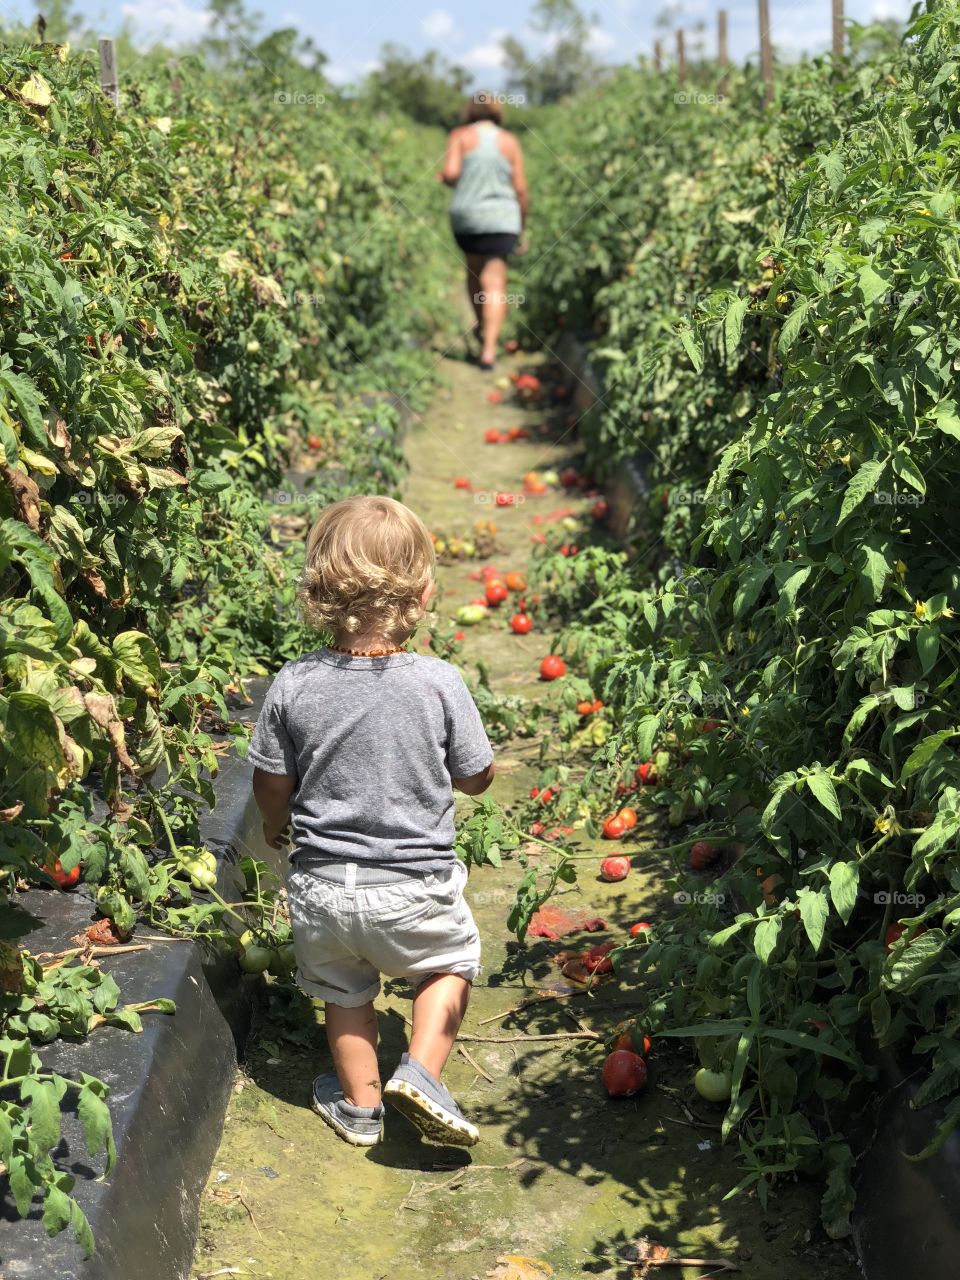 The little tomato farmer 